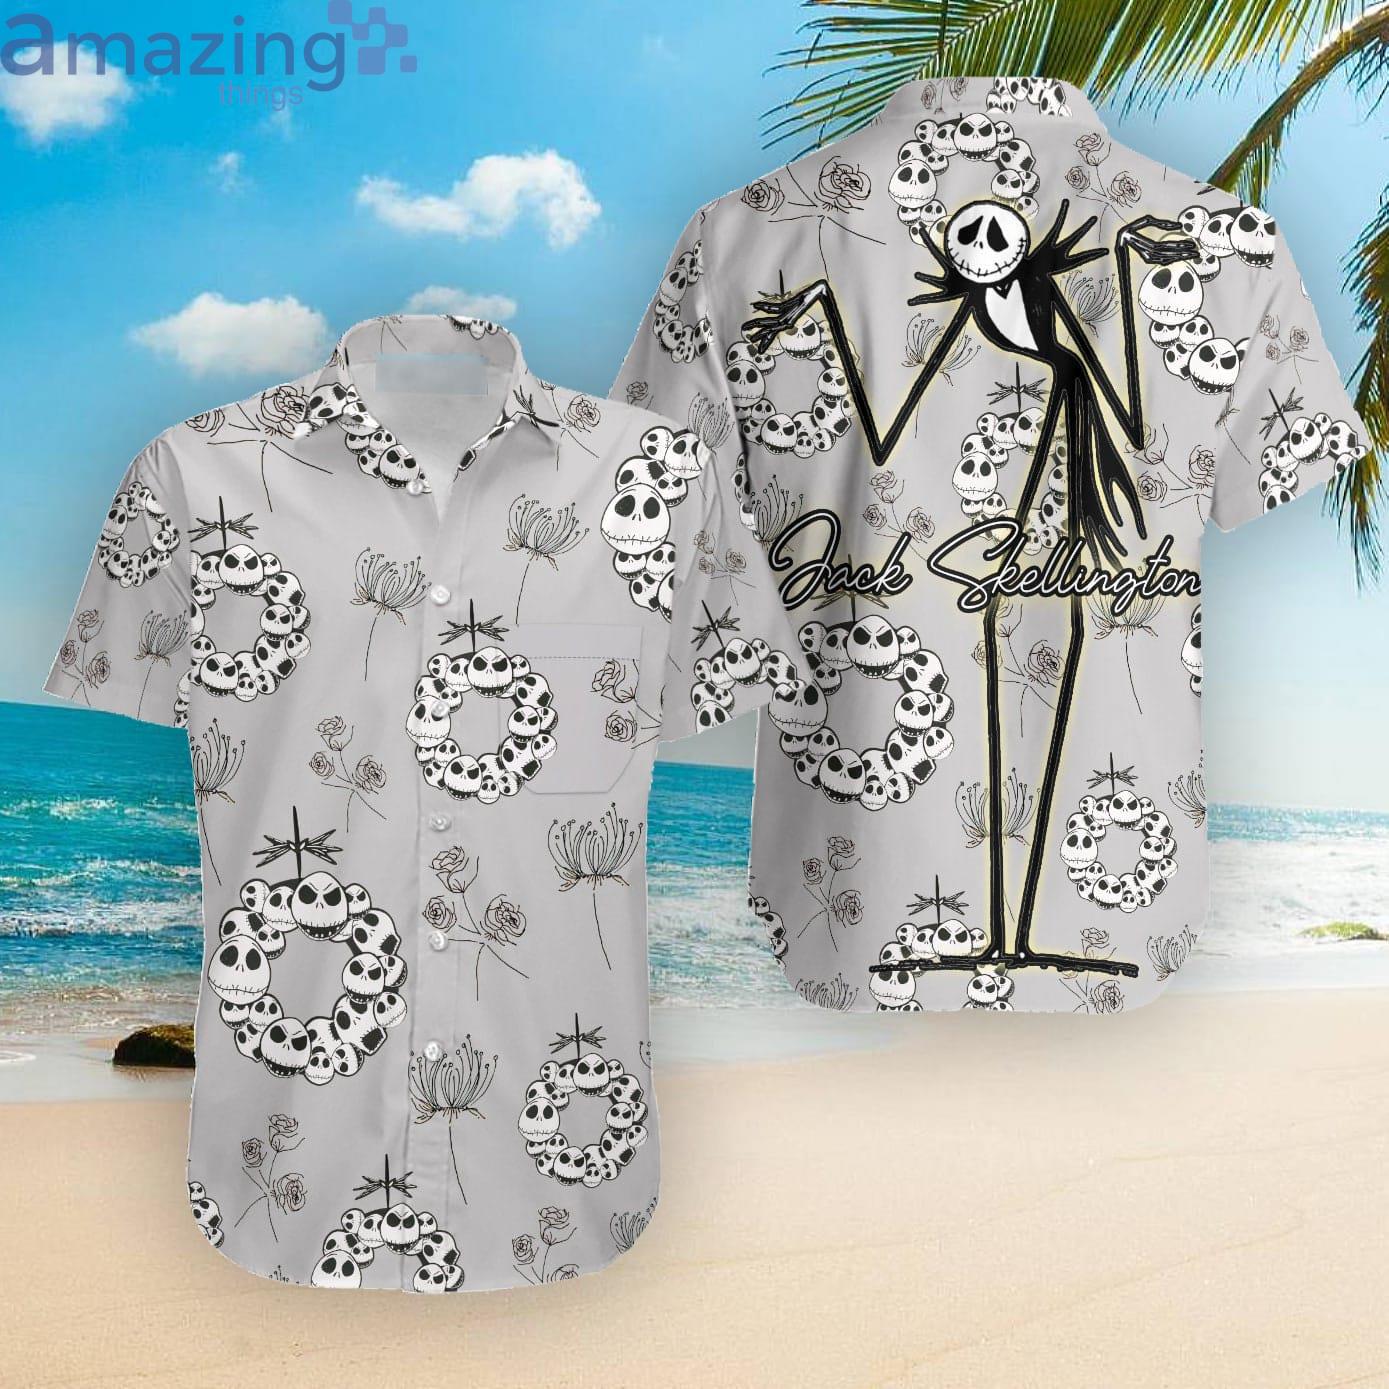 Jack Skellington Disney Cartoon Halloween Hawaiian Shirt Product Photo 1